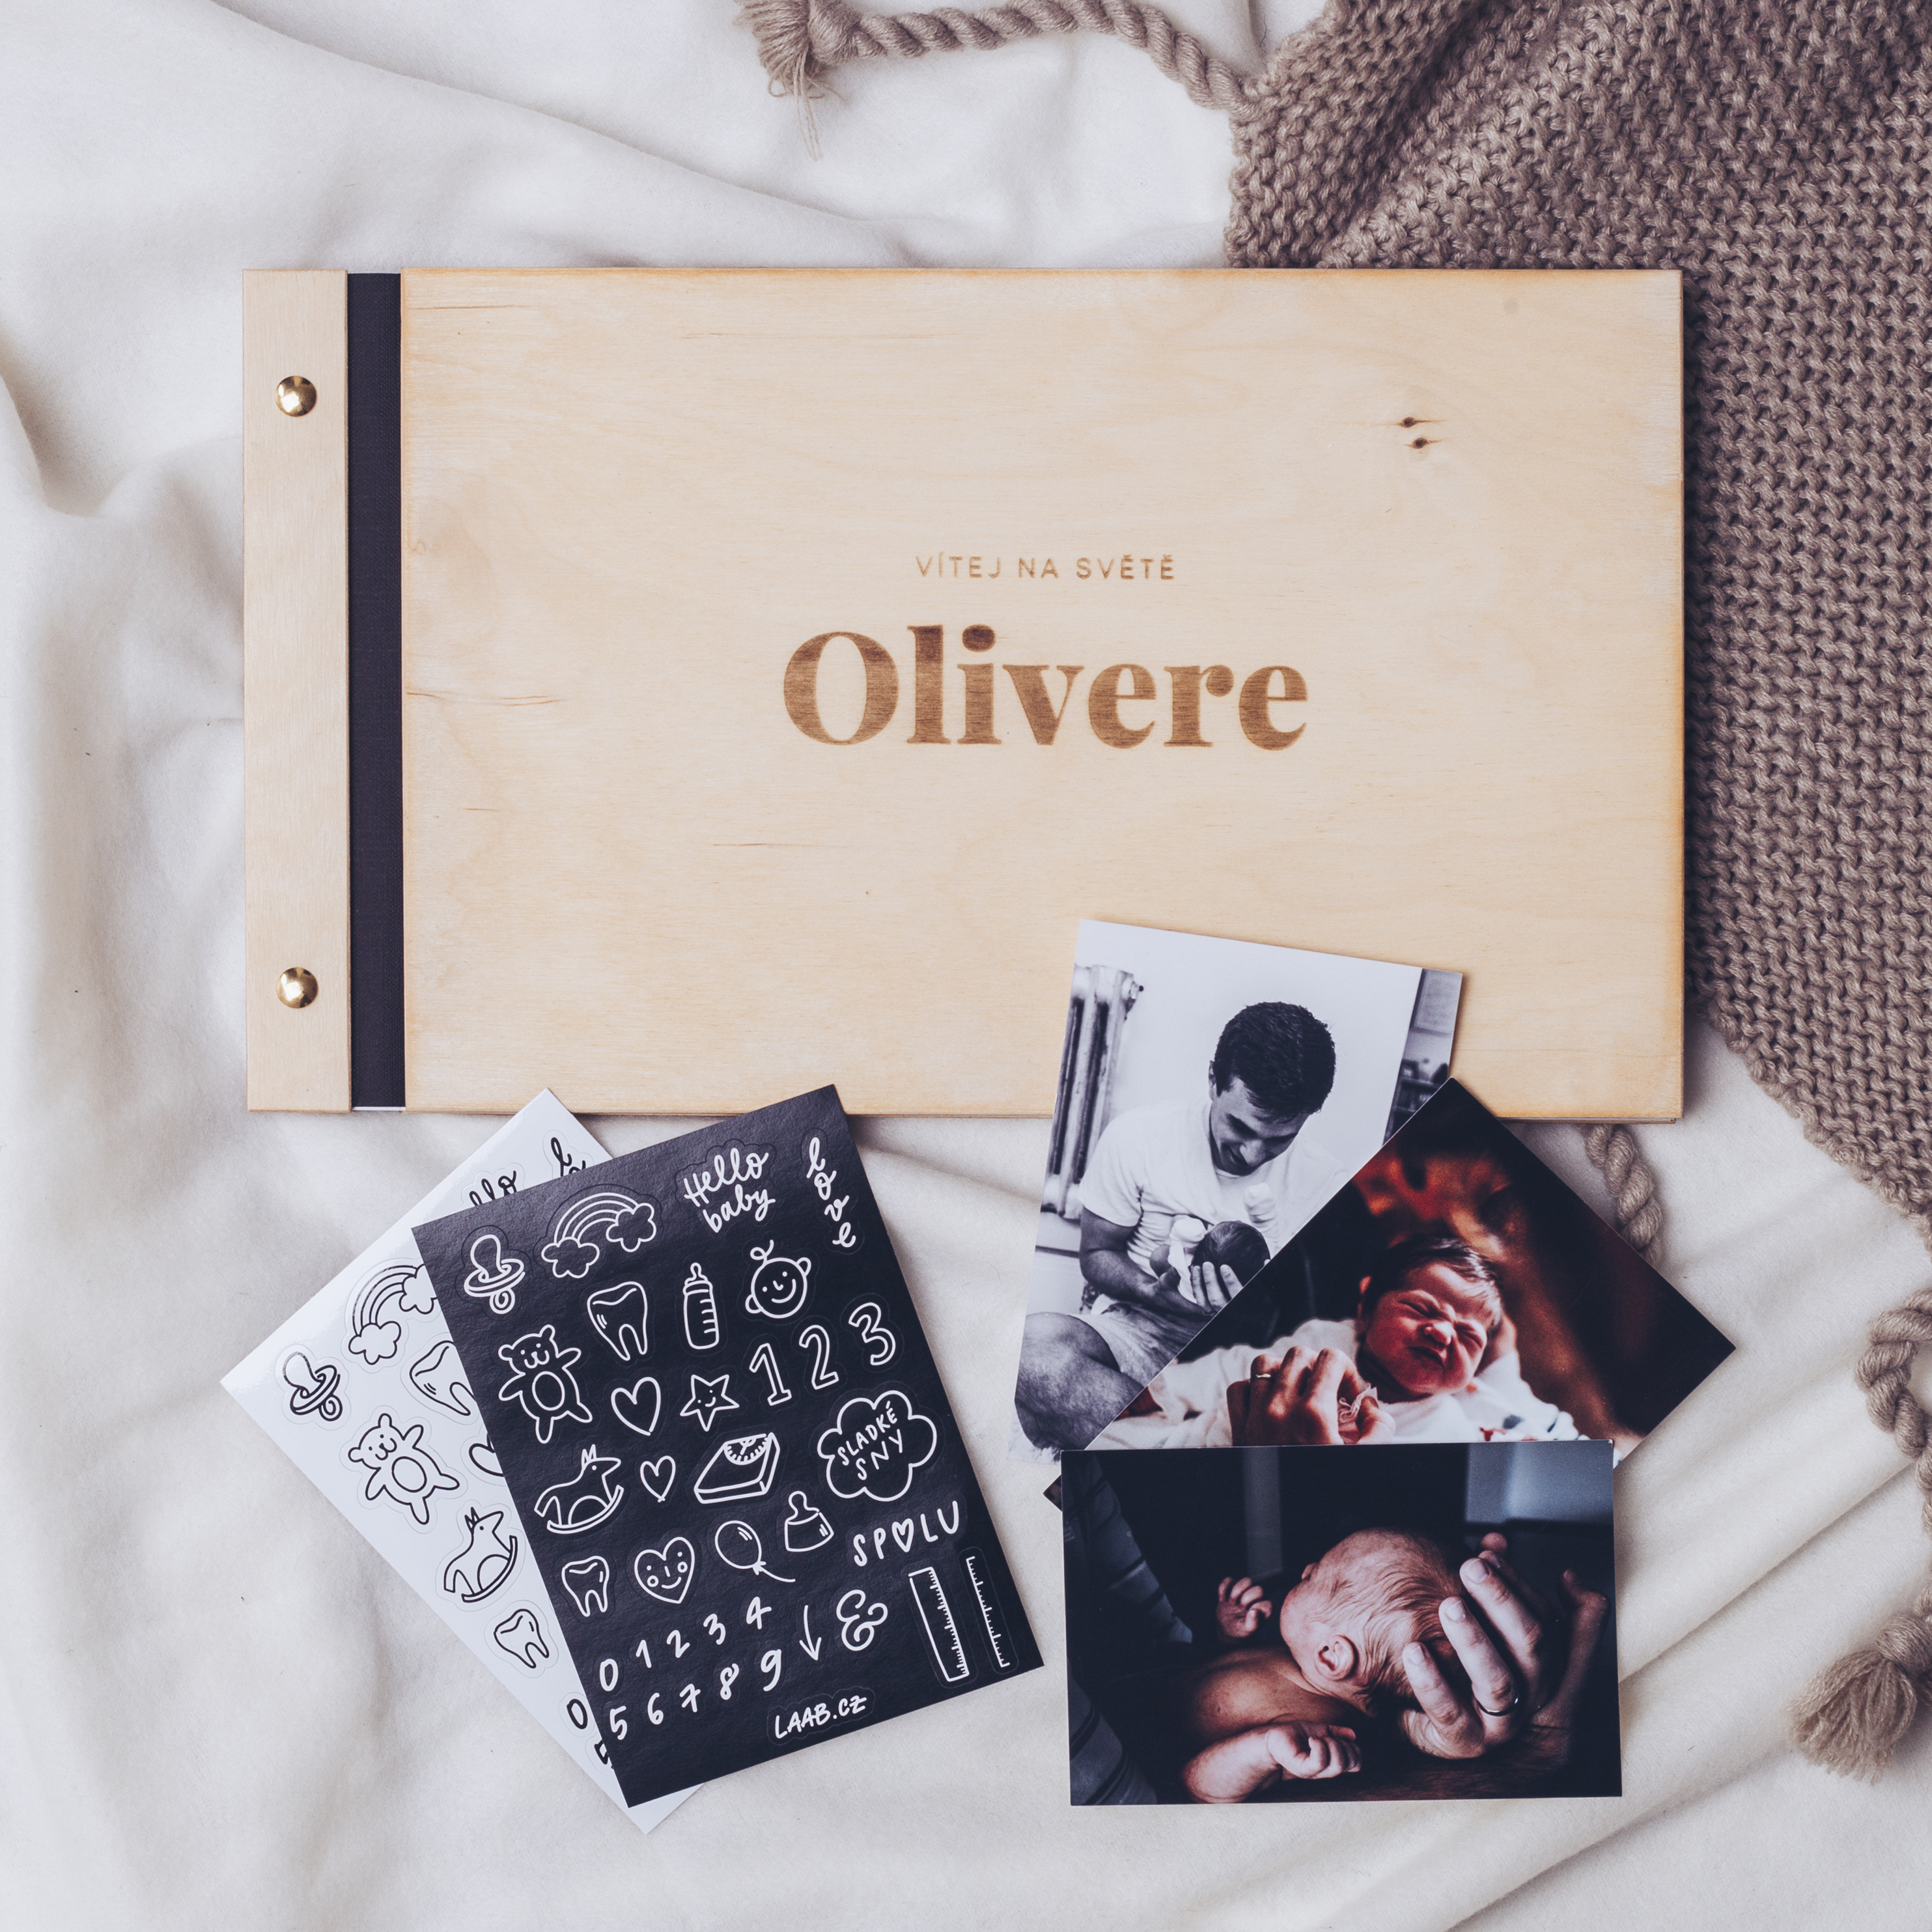 dřevěné fotoalbum Oliver: FORMÁT FOTOALBA na šířku, POČET LISTŮ 45 s prokladovými listy, FORMÁT FOTOALBA na šířku, POČET LISTŮ 50, BARVA LISTŮ černá